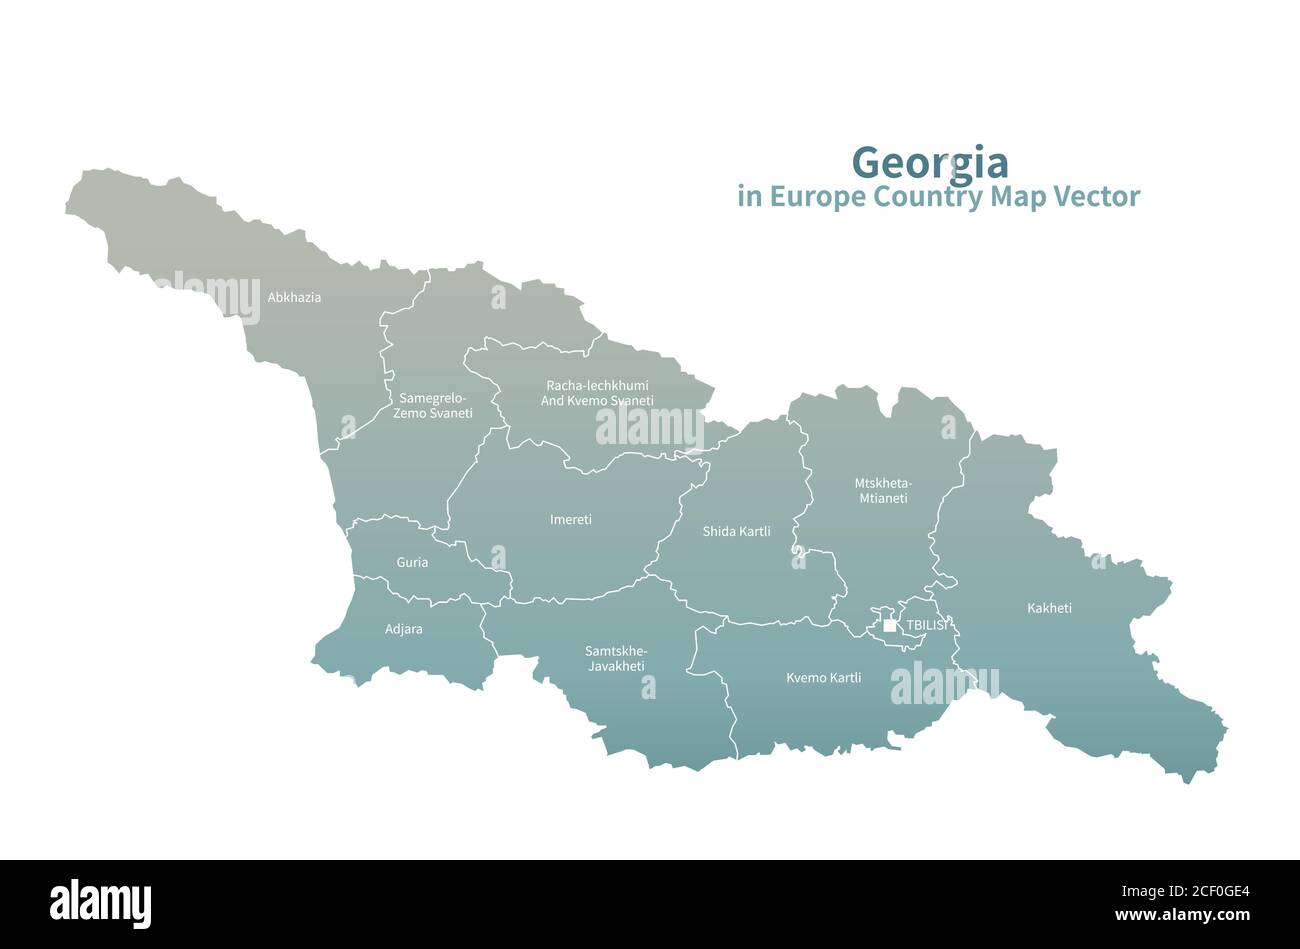 Georgia vector map. European Country Map Green Series. Stock Vector